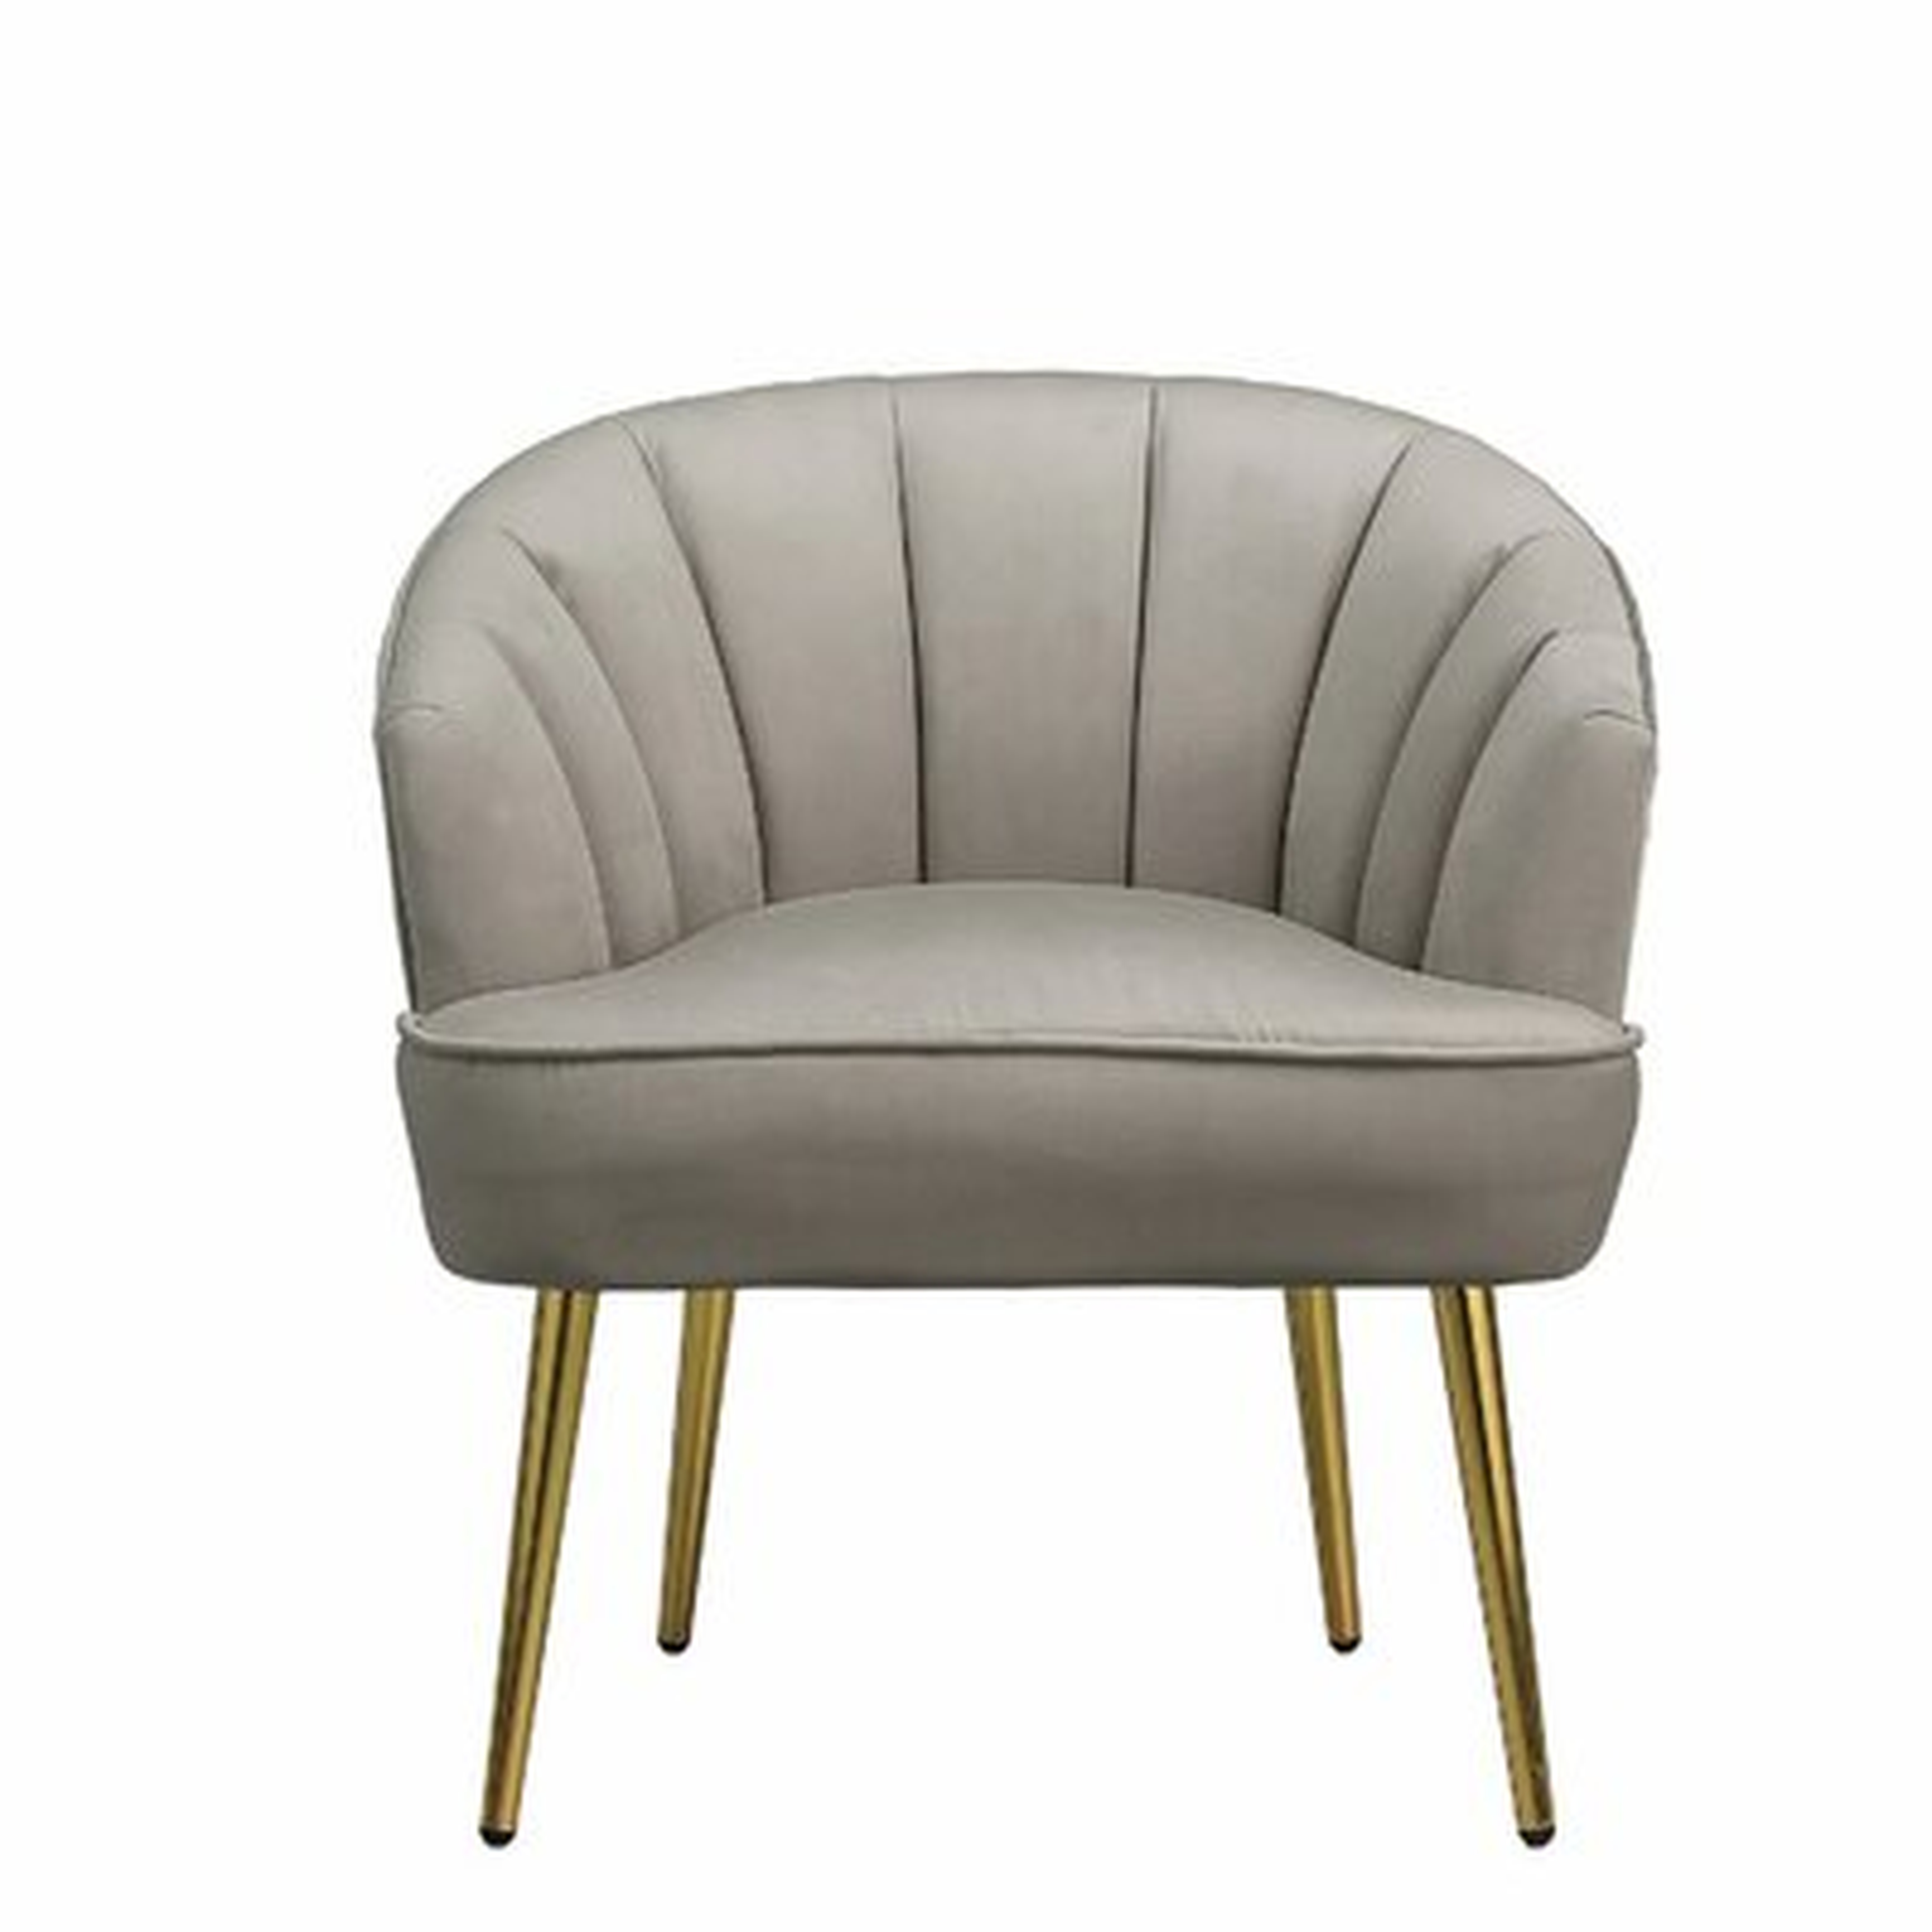 Modern Backrest Accent Chair For Living Room Bedroom Metal Leg,Velvet - Wayfair